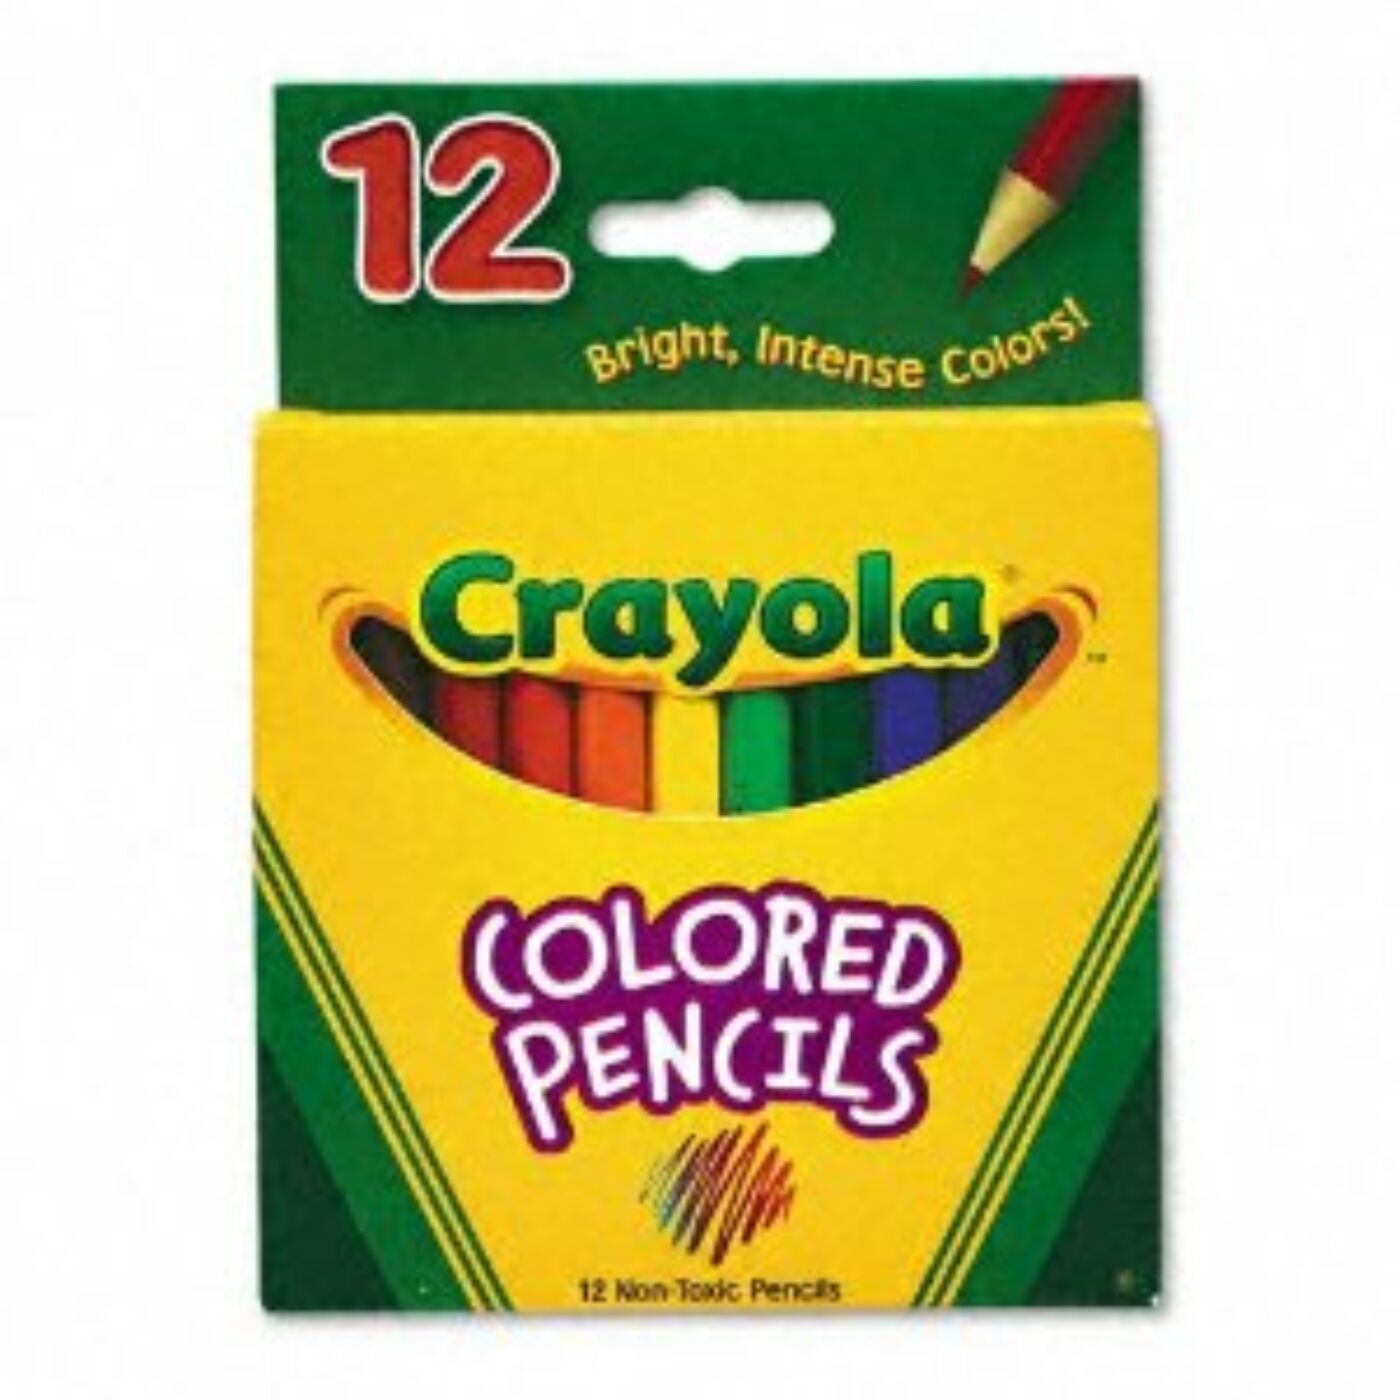 Crayola 12 db félhosszú színes ceruza